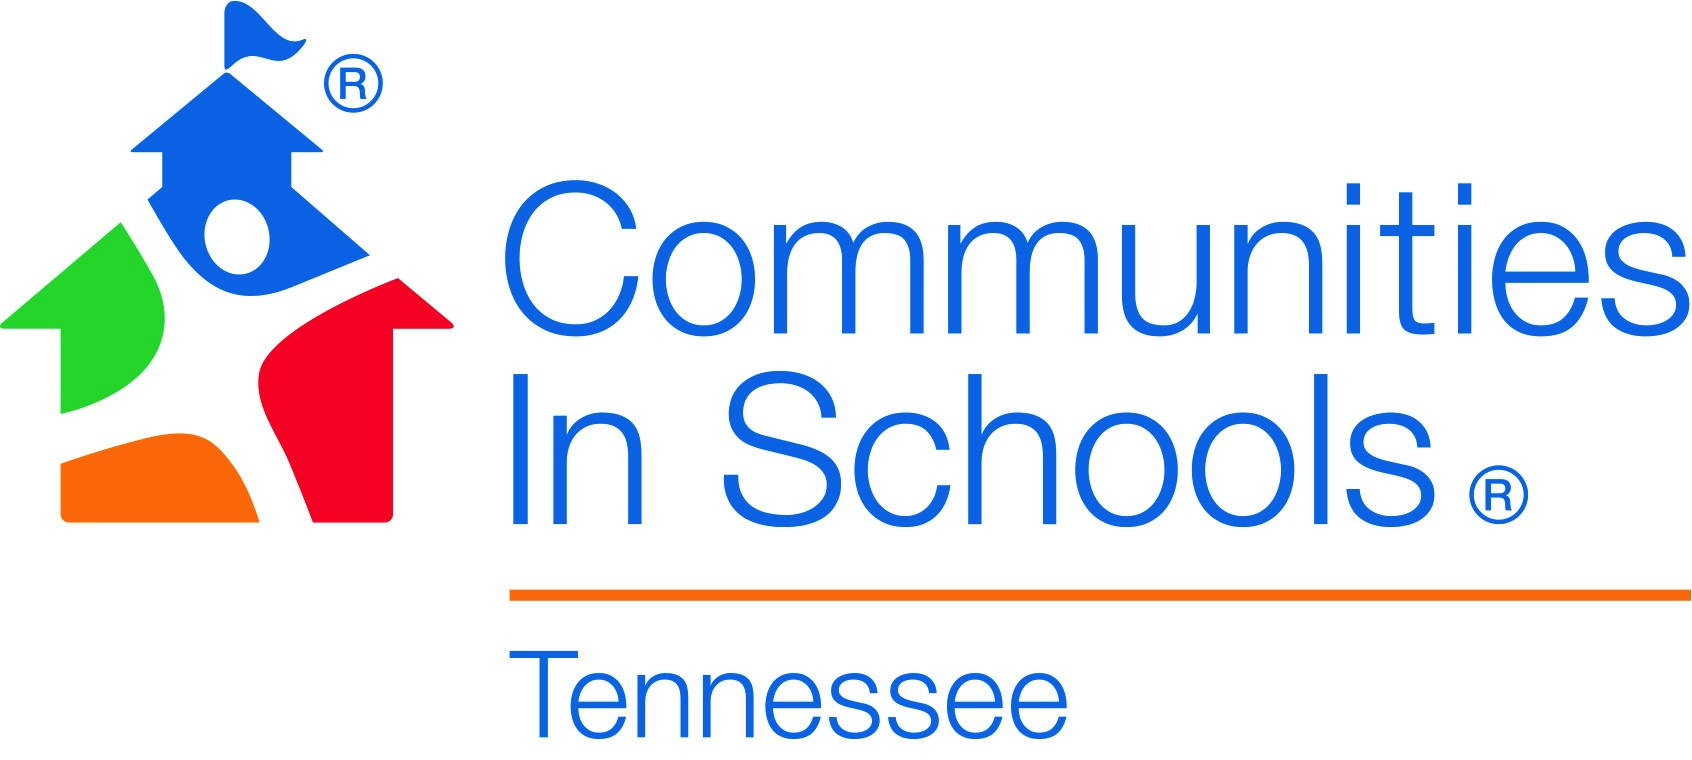 Communities in Schools Tennessee